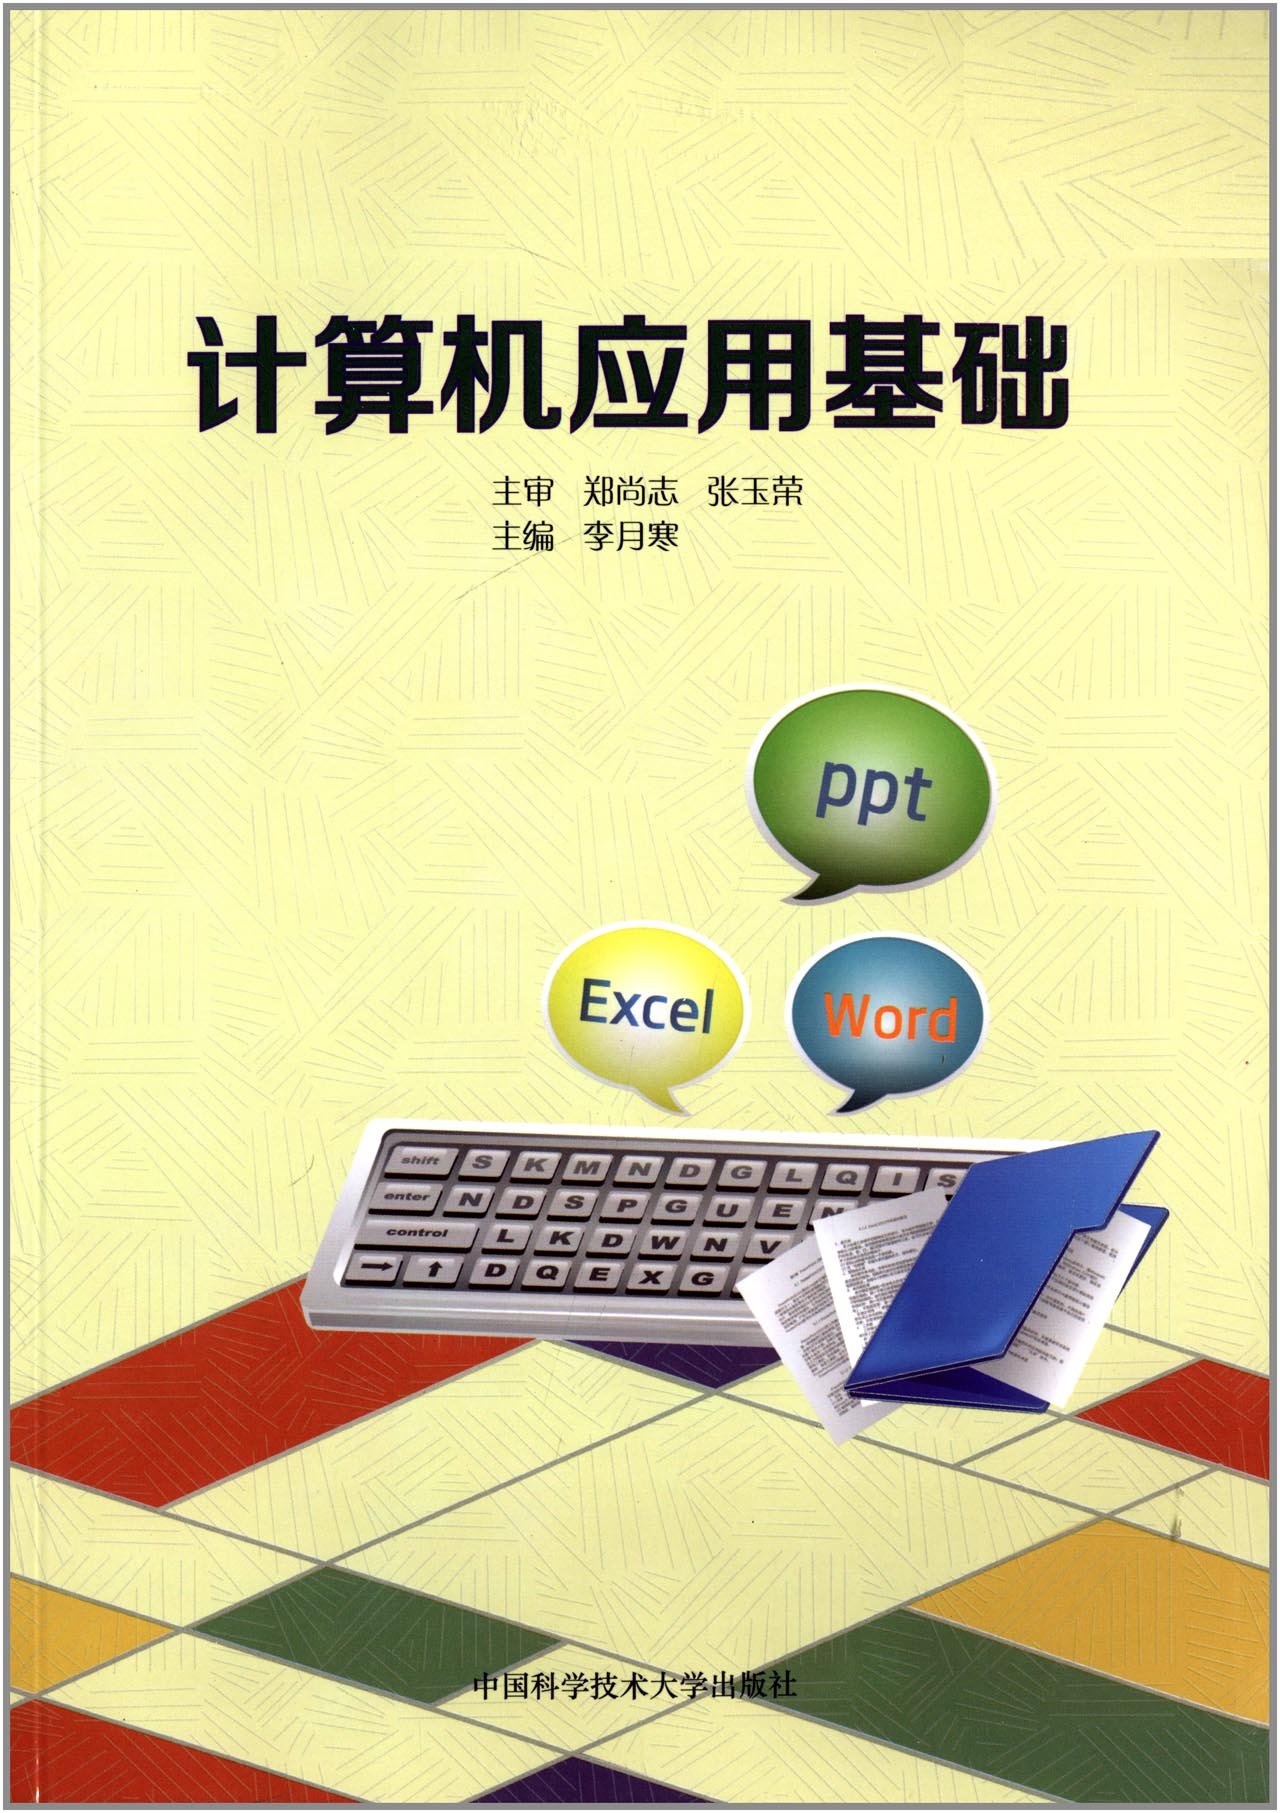 計算機套用基礎(中國科學技術大學出版社出版書籍)